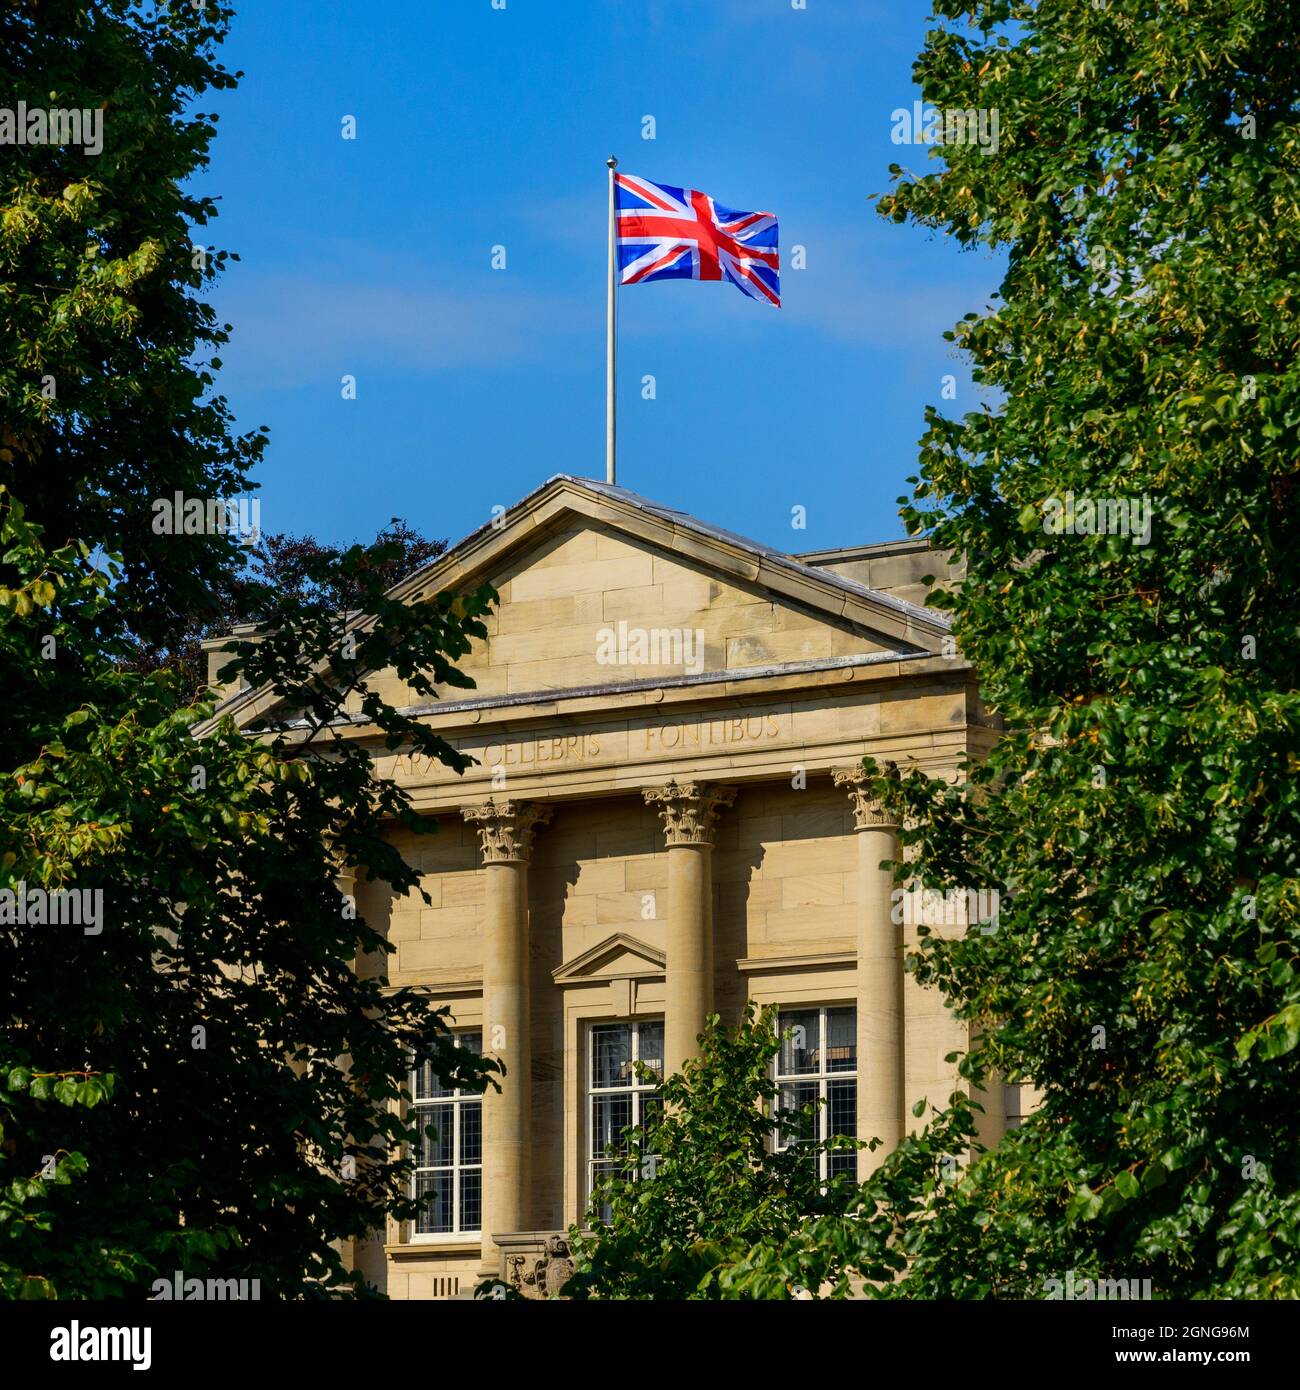 Bandiera Union Jack che sorvola gli uffici del consiglio di Harrogate (motto latino, esterno dell'edificio, cielo blu profondo) - Crescent Gardens, Yorkshire Inghilterra, Regno Unito Foto Stock